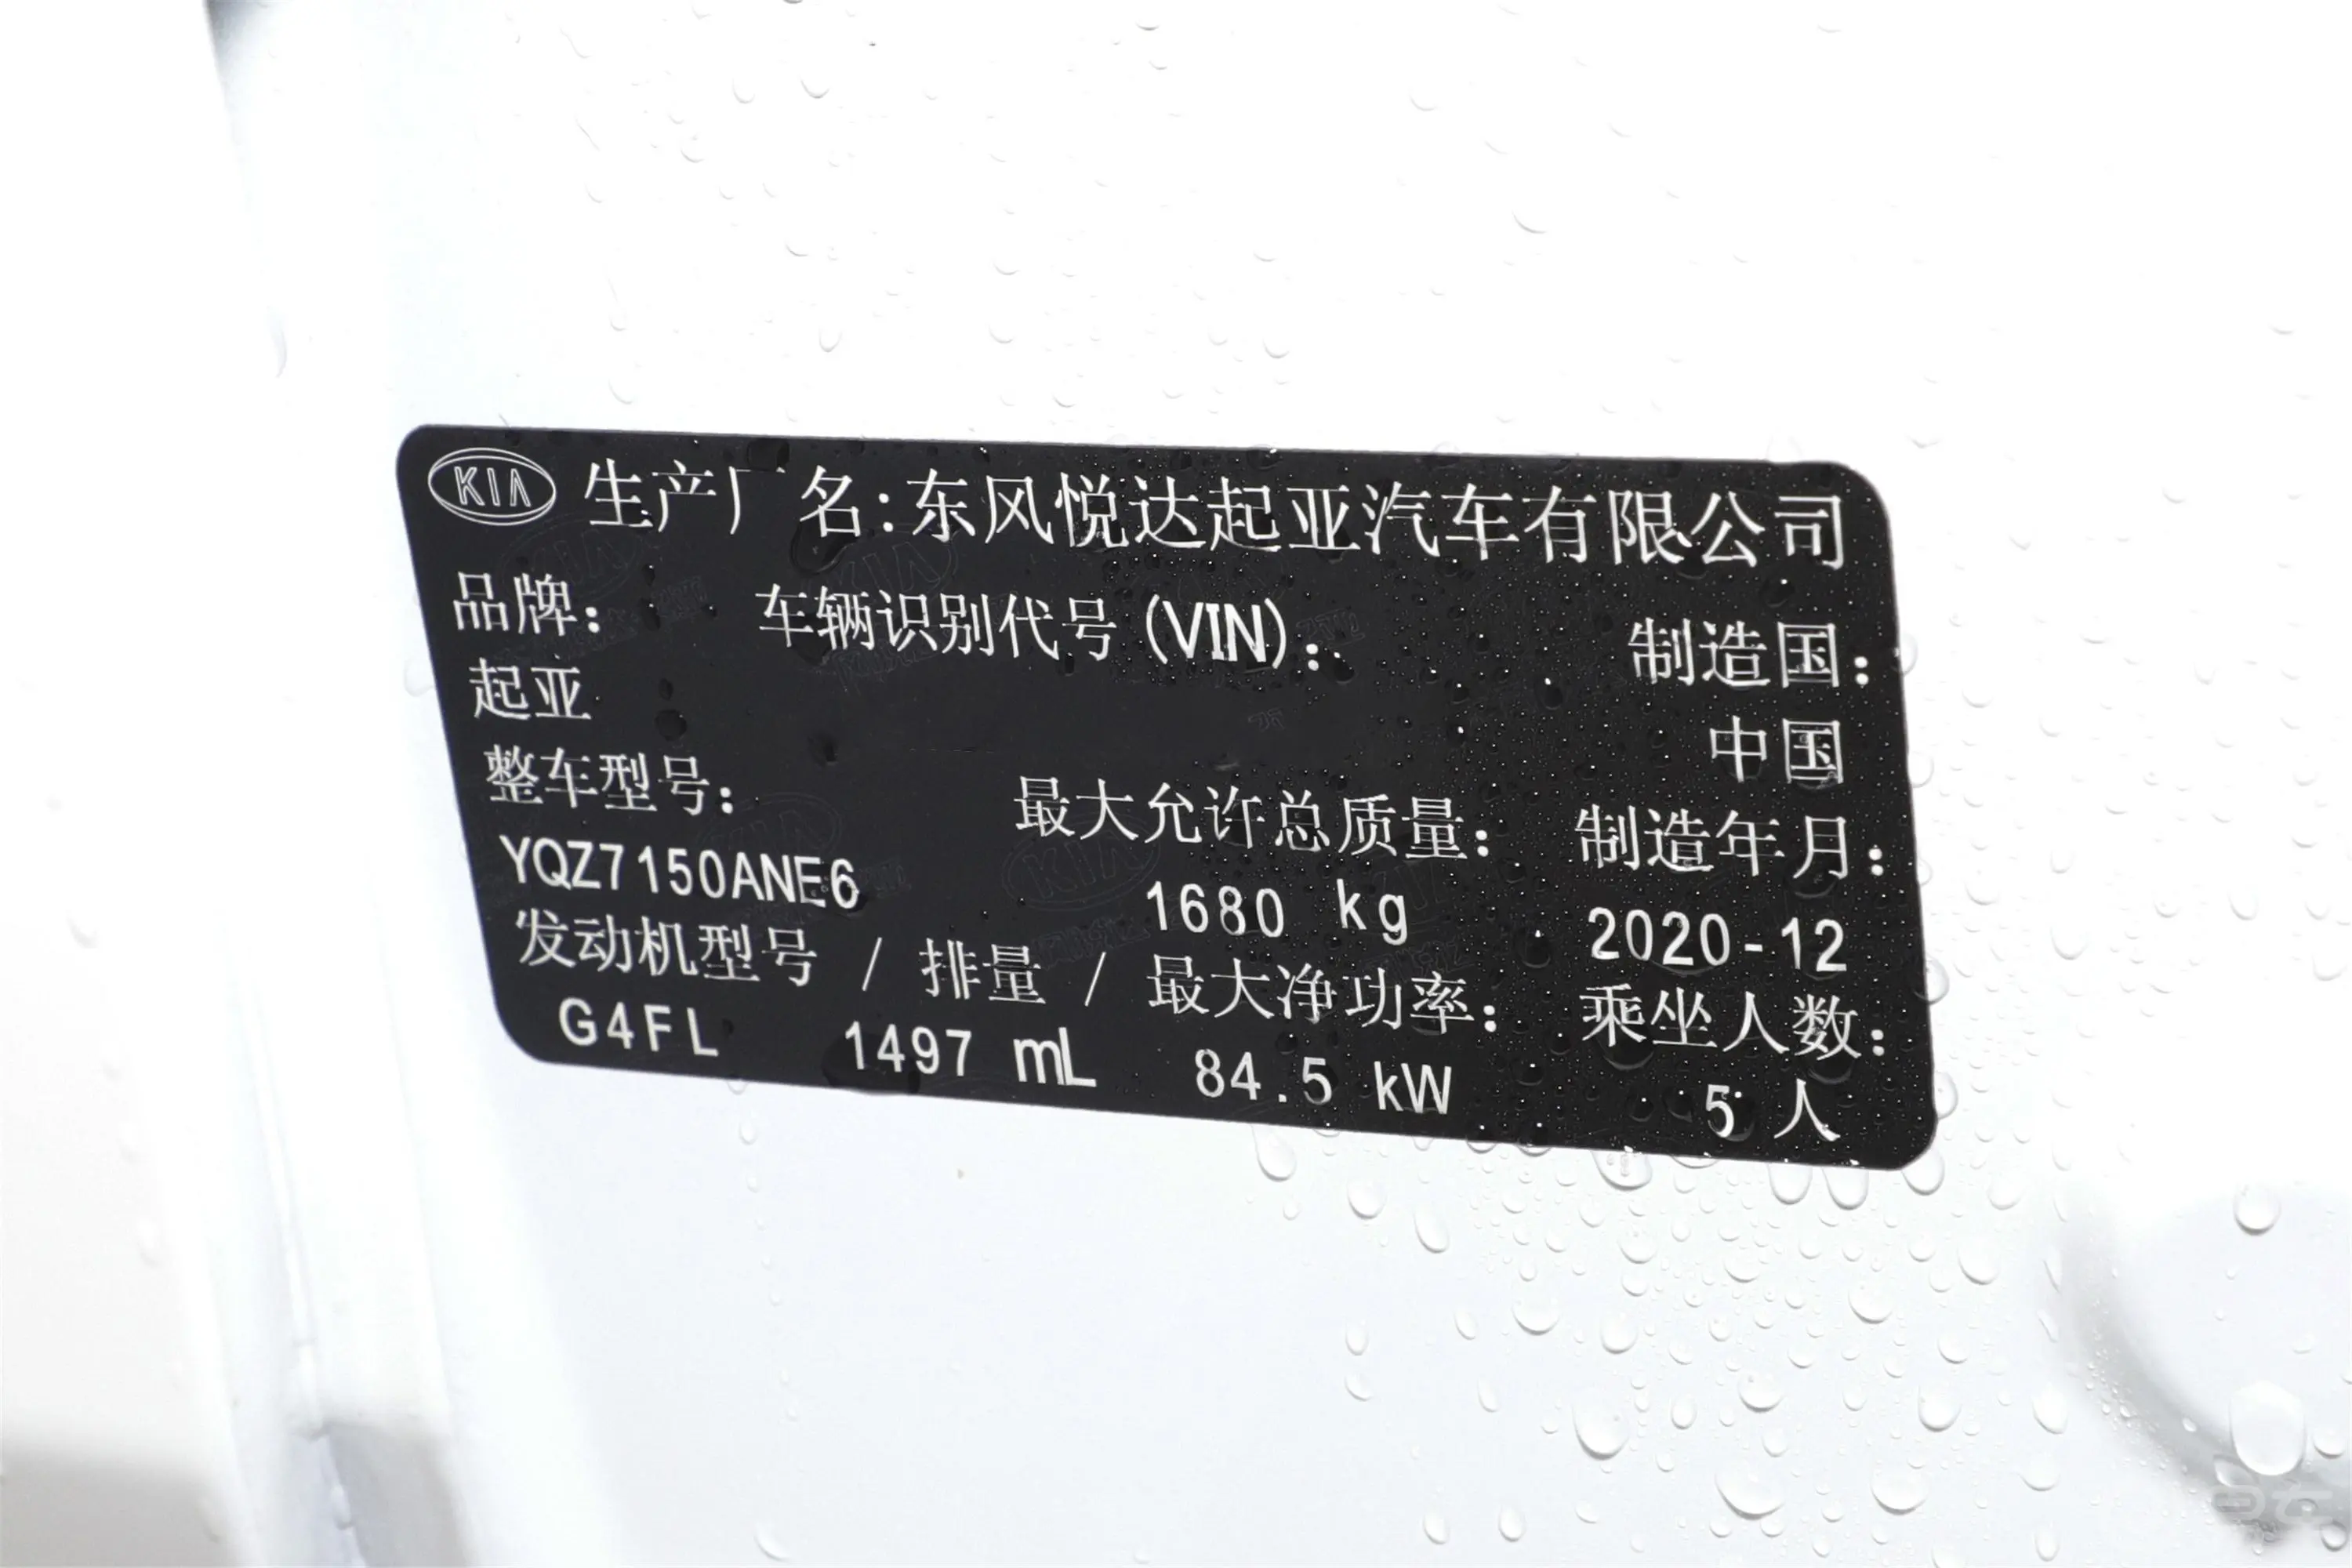 起亚K31.5L CVT 青春版车辆信息铭牌